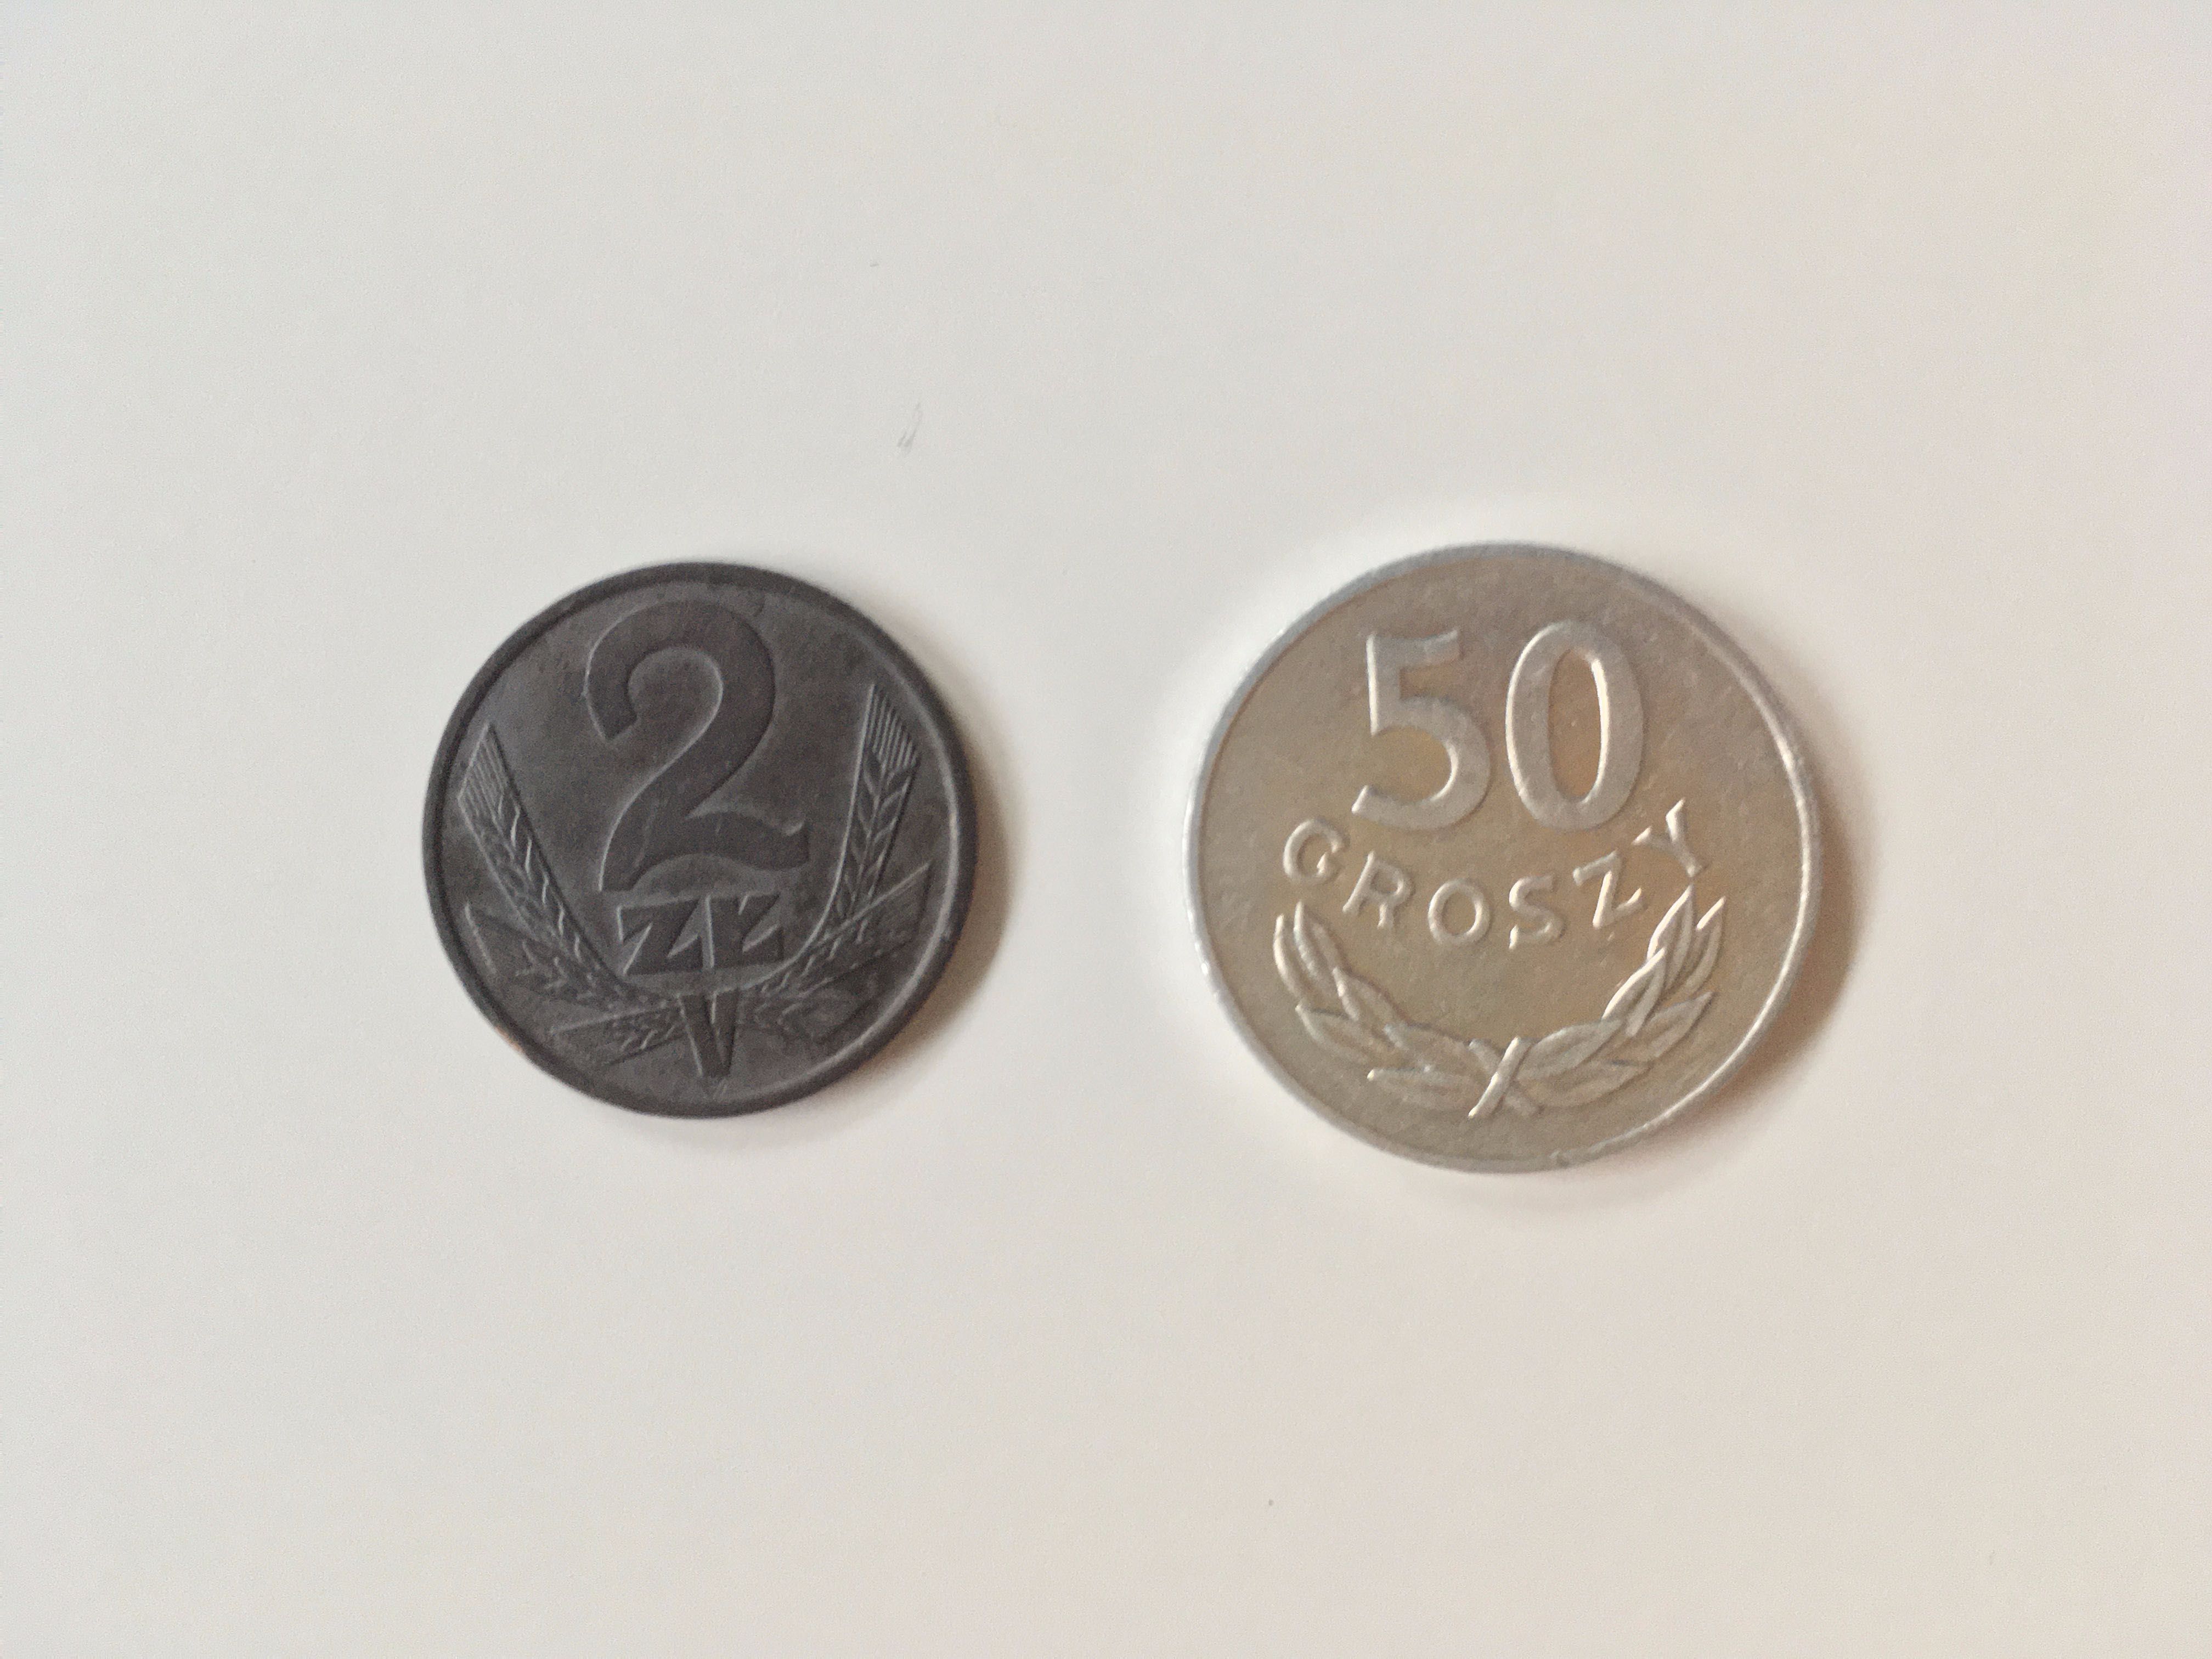 Moneta PRL 2 złoty 1976 i 50 groszy 1983 Polska Rzeczpospolita Ludowa